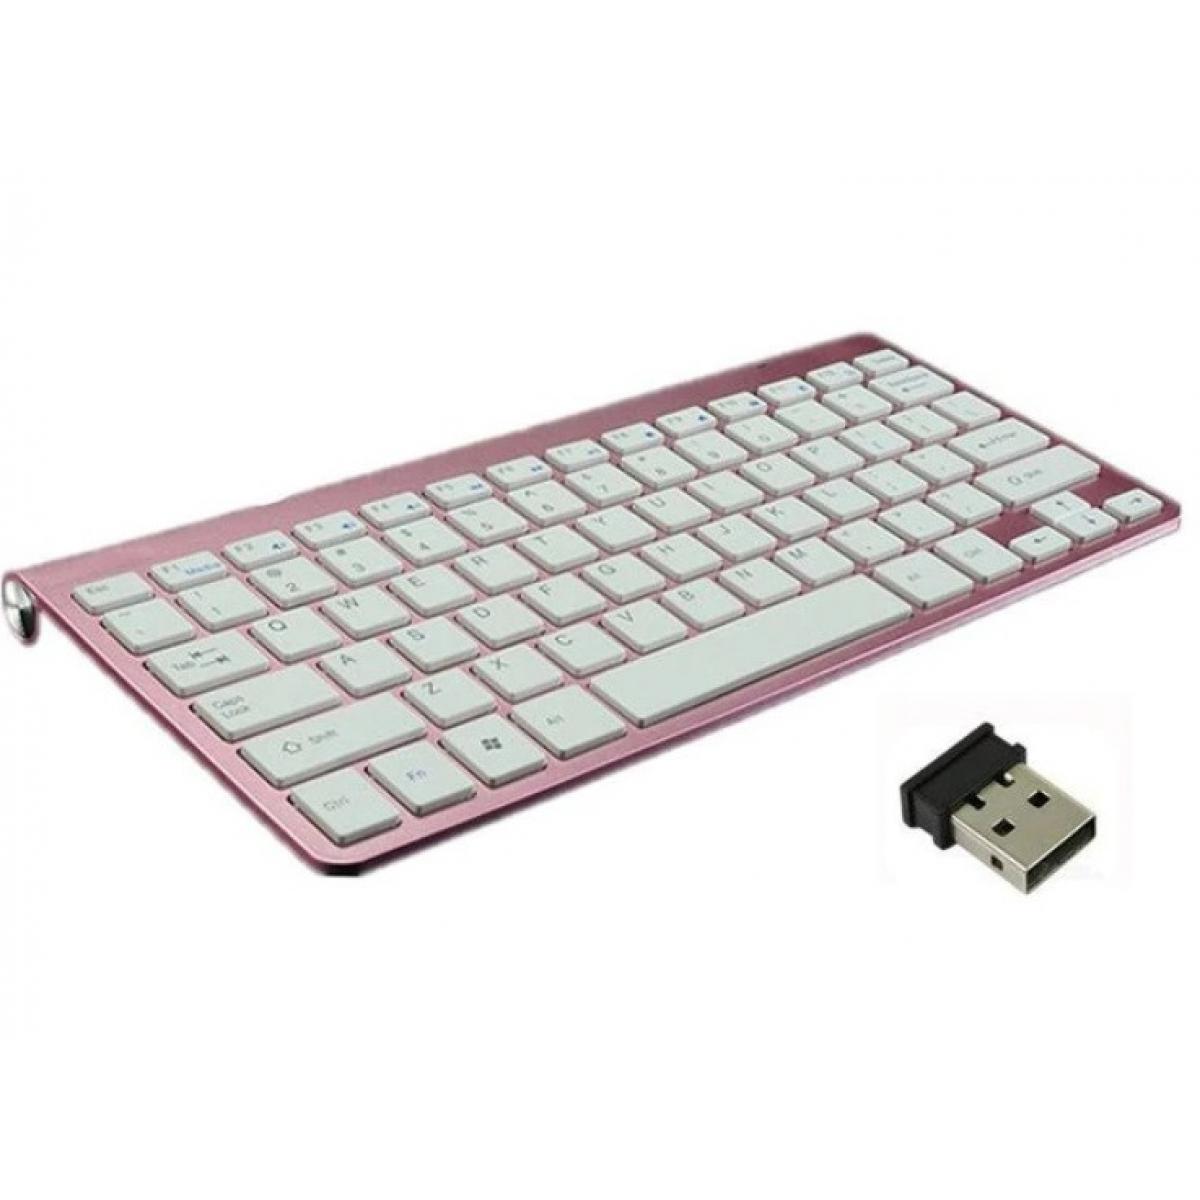 Shot - Clavier Sans Fil Metal pour PC HUAWEI USB QWERTY Piles (ROSE) - Clavier